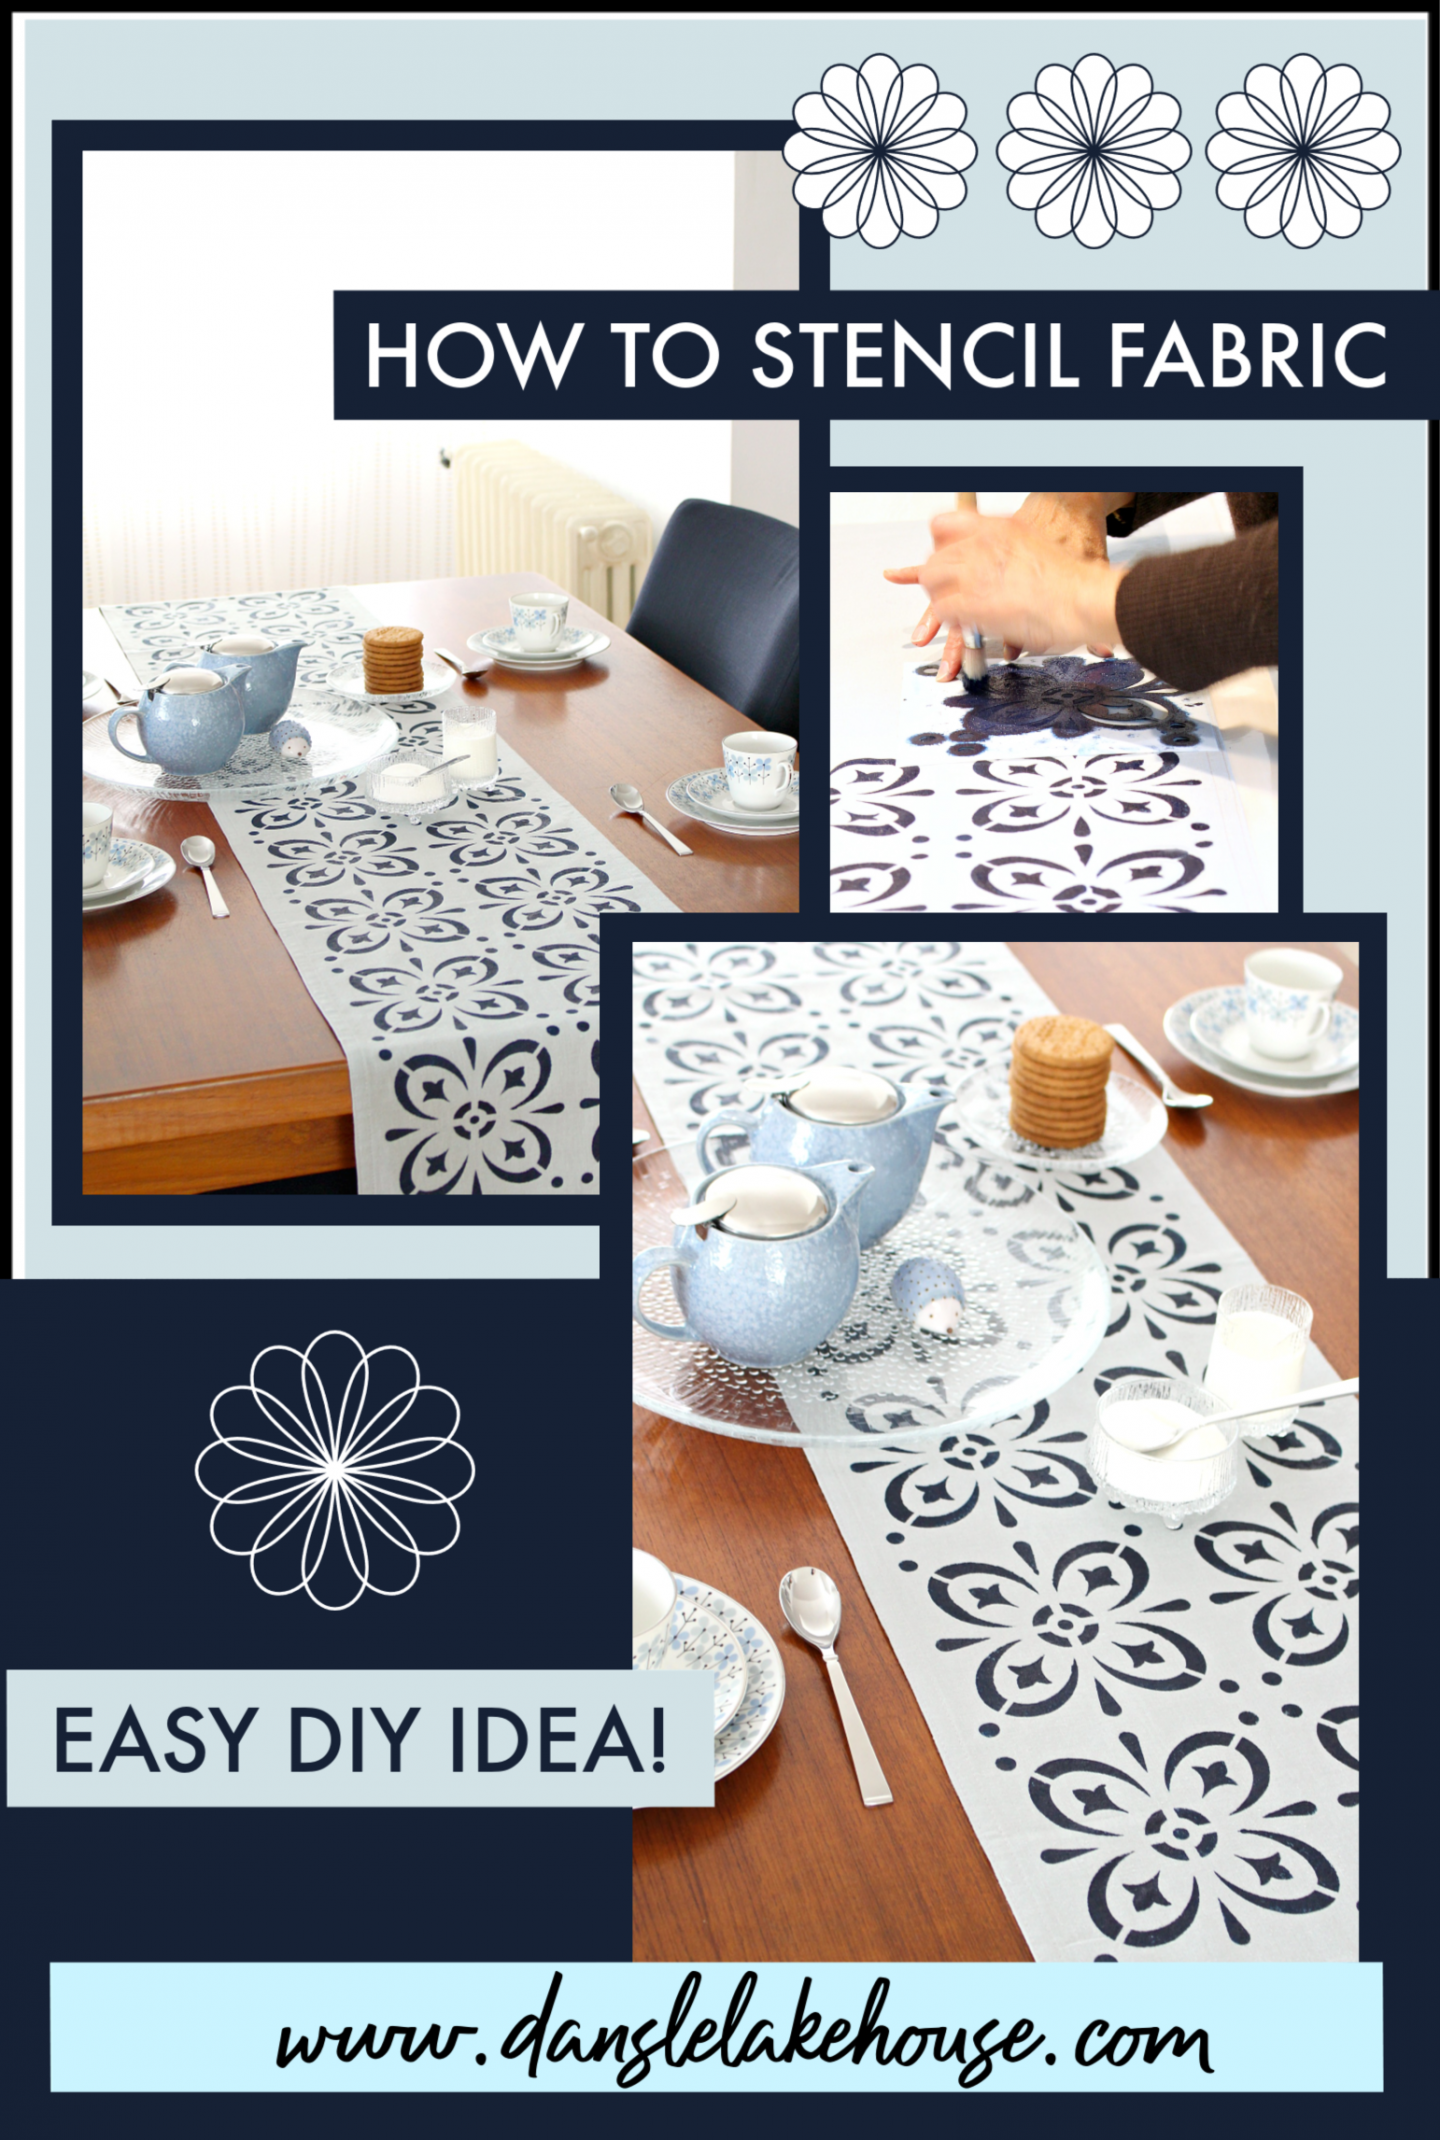 DIY Stenciled Fabric Table Linens | Dans le Lakehouse